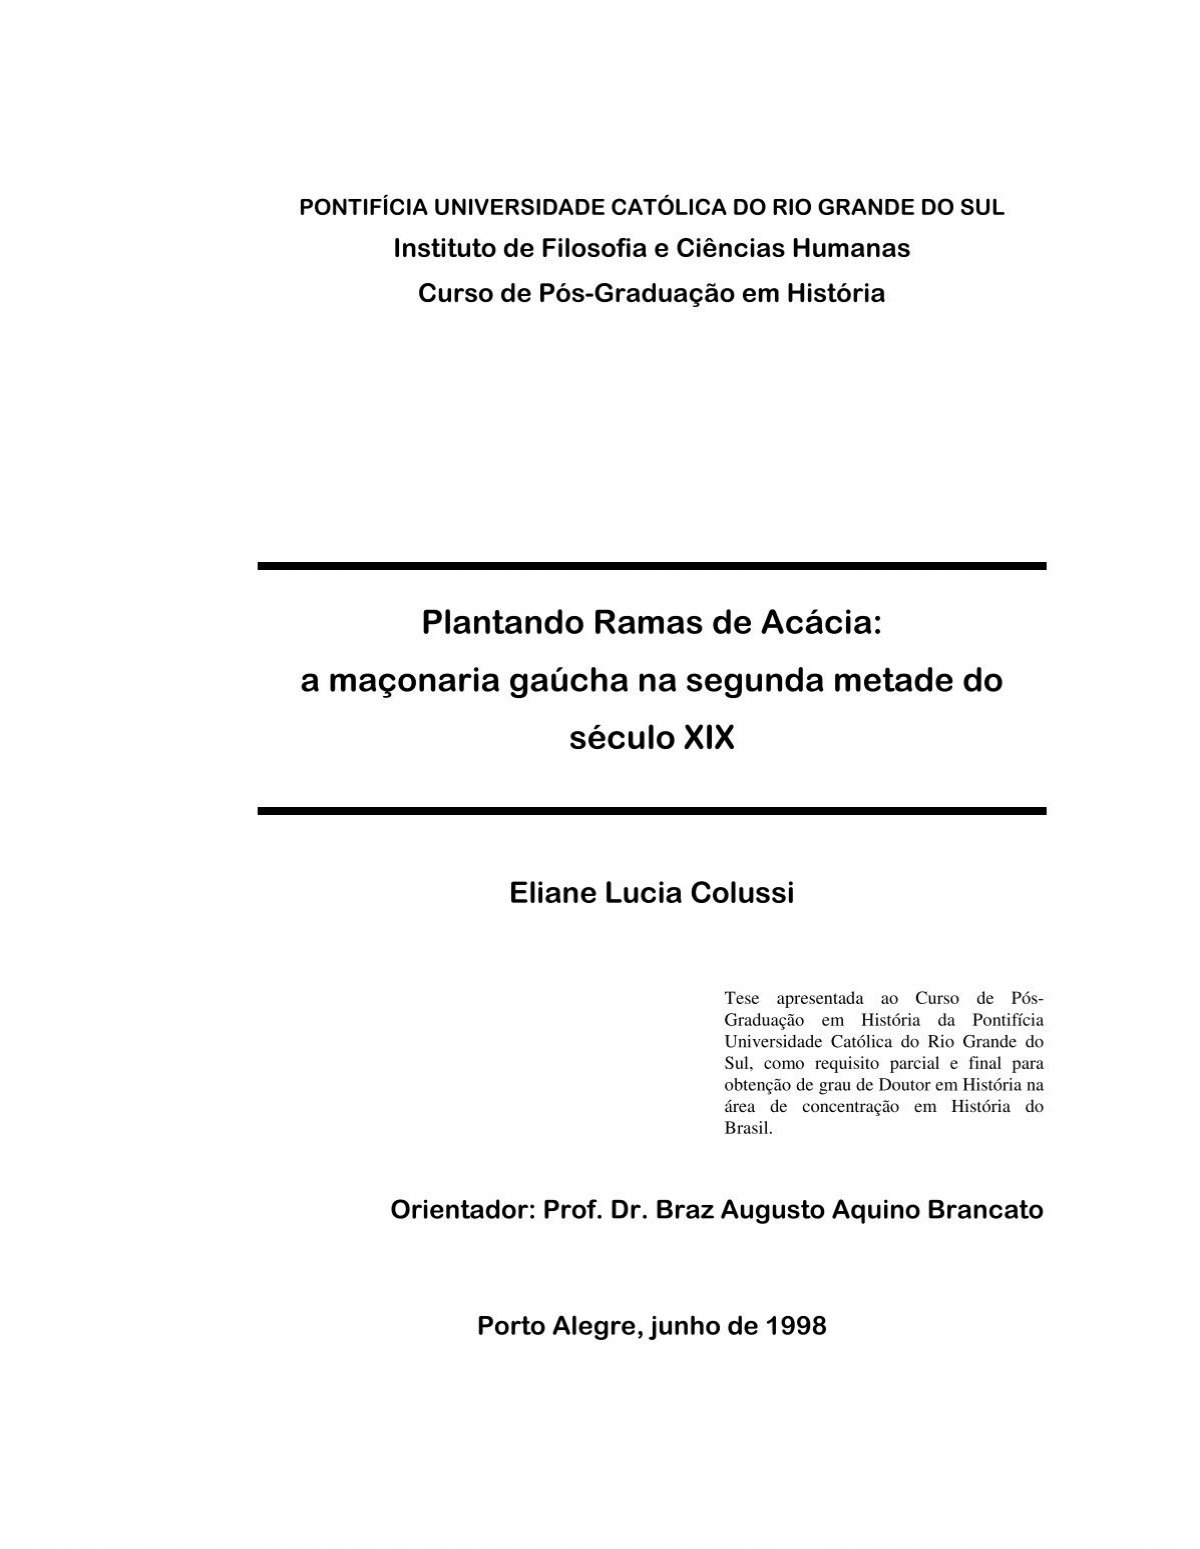 Anderson Freire - Raridade - Cifra Club PDF